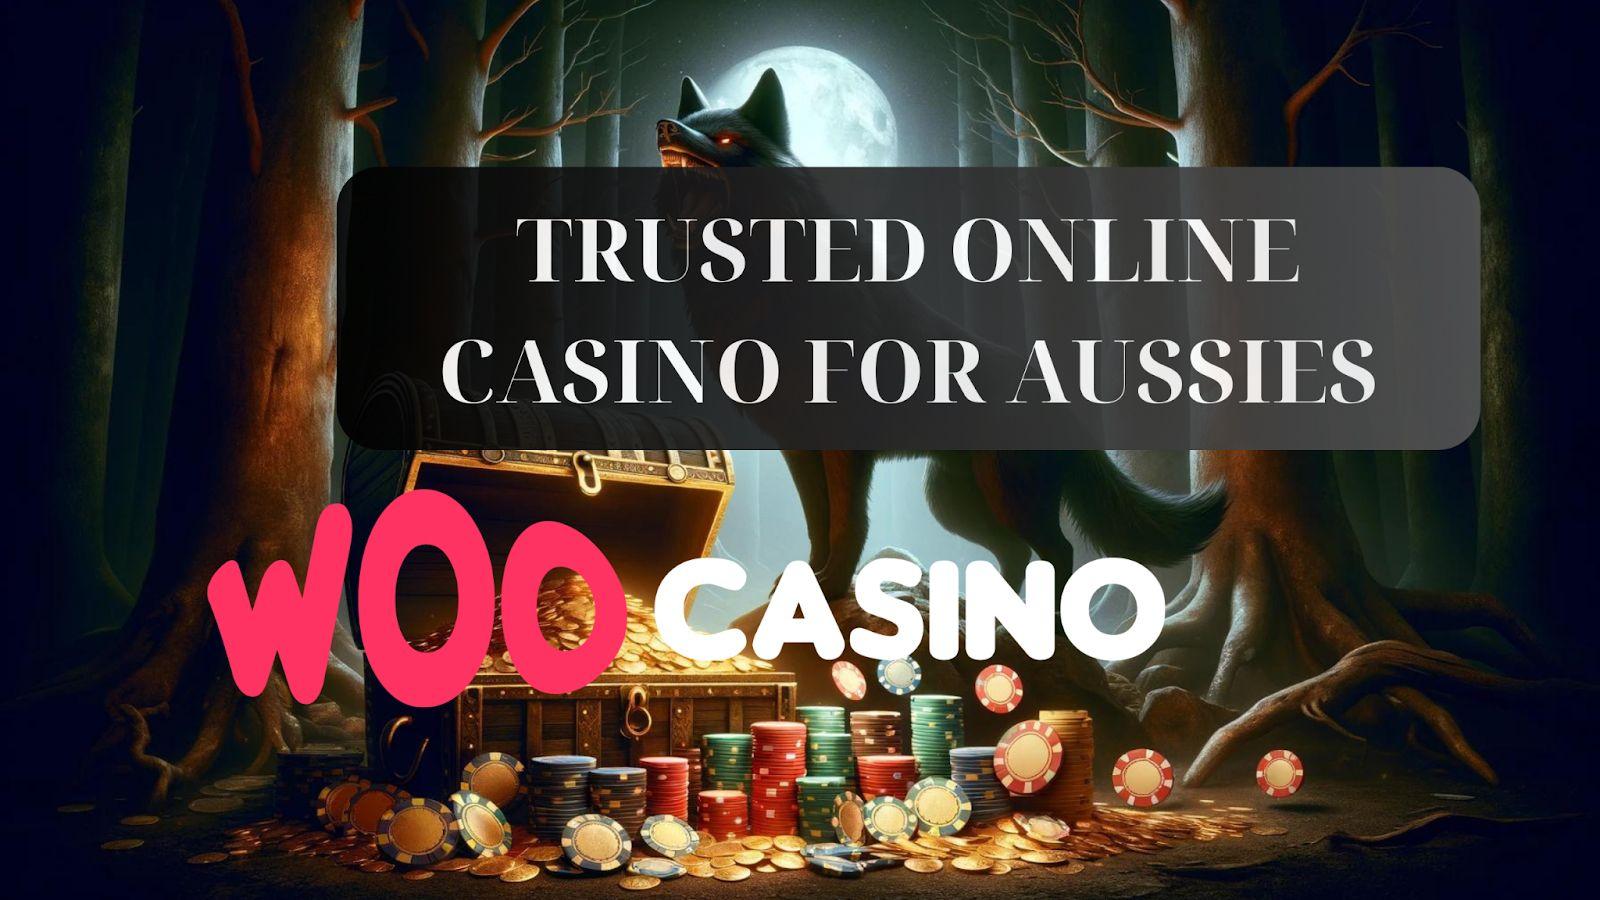 Woo Casino - надежный выбор для австралийцев